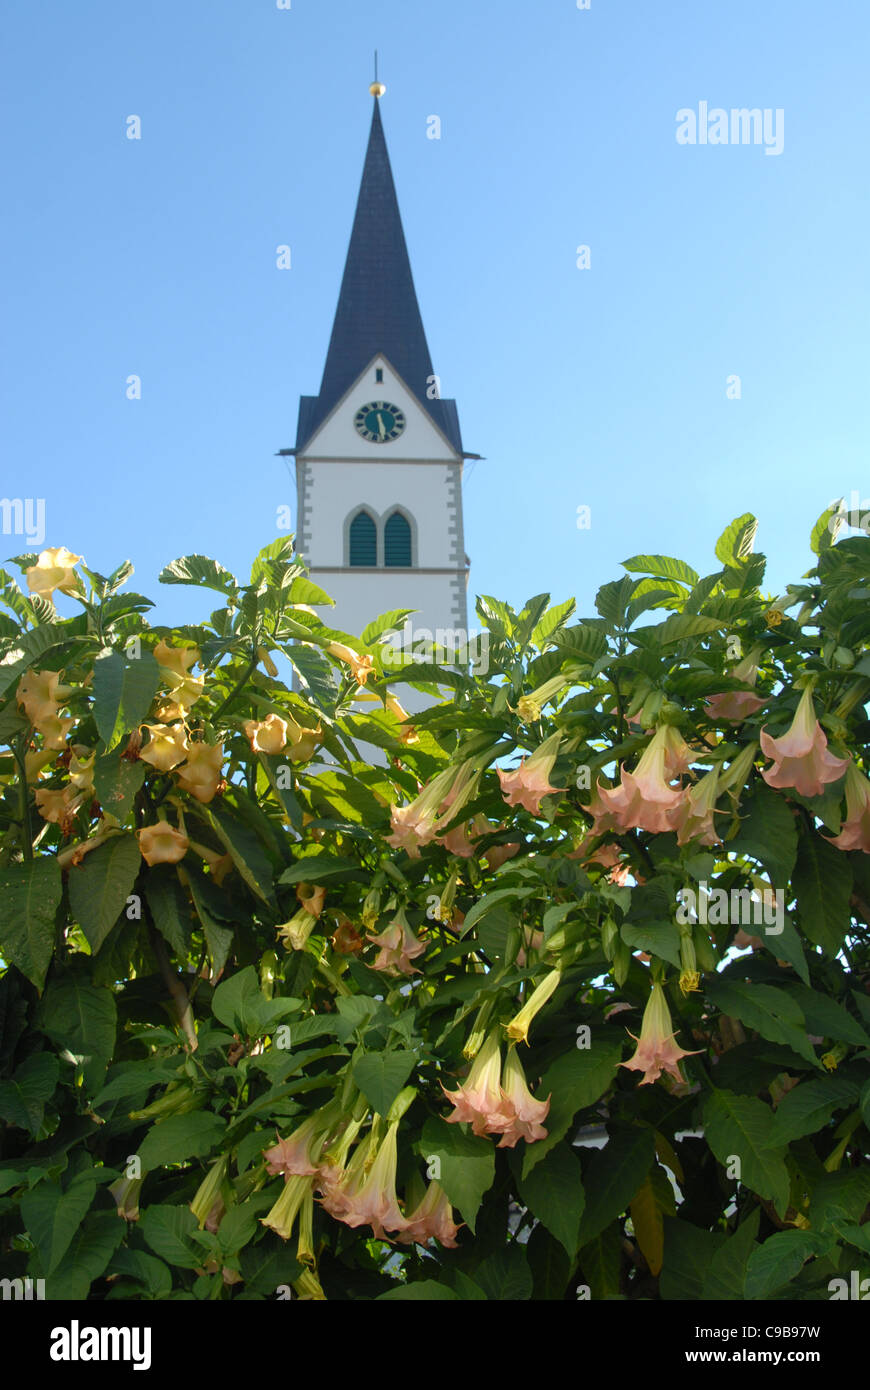 Turm der St. NIkolauskirche, die wichtigste Kirche Markdorf im oberen  Schwaben, Deutschland, und Trompete Blumen in voller Blüte Stockfotografie  - Alamy